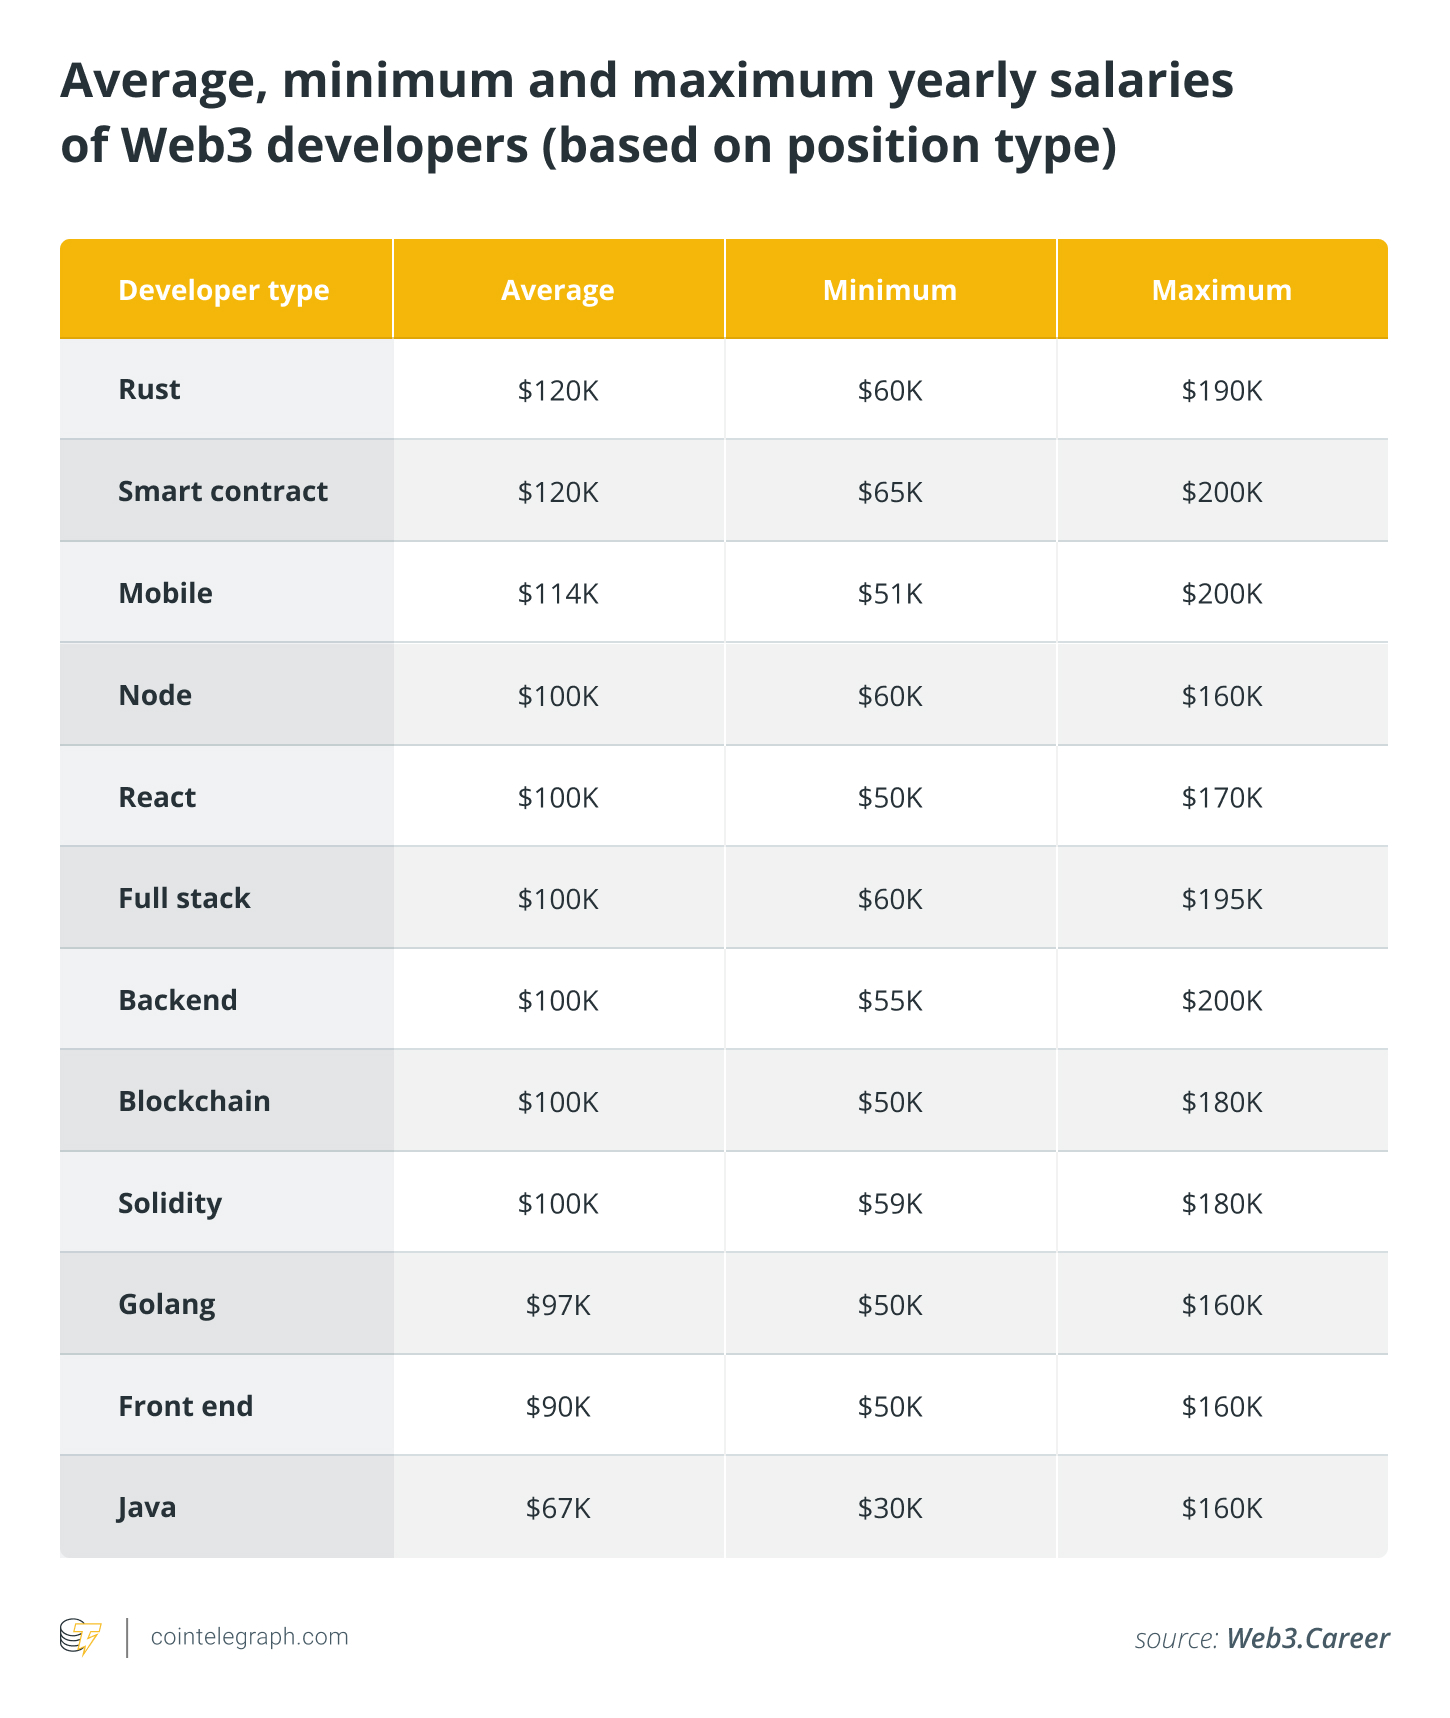 Average minimum and maximum salaries of Web3 developers (based on position type)